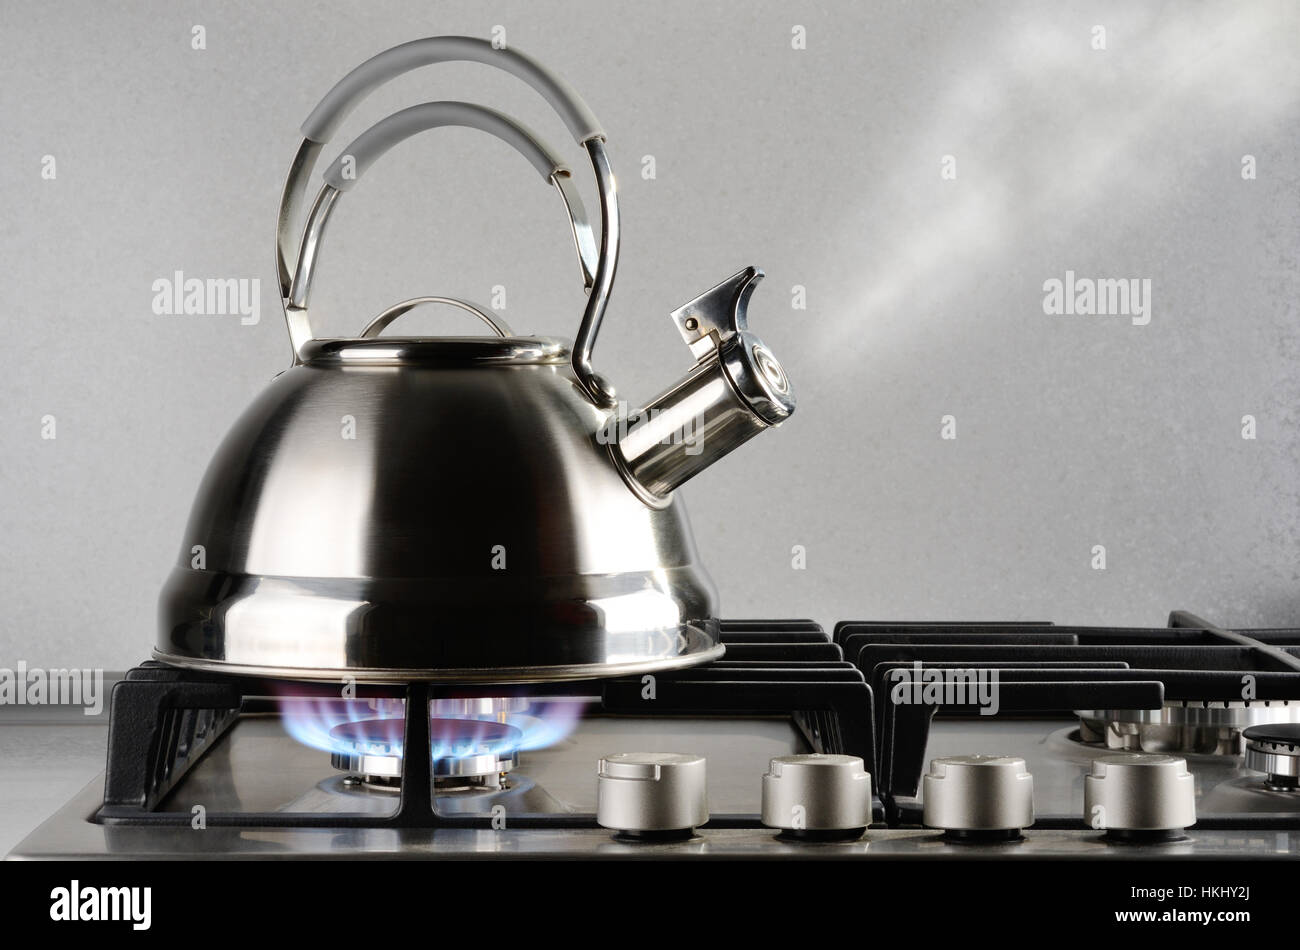 Pot of Boiling Water on Hot Burner Stock Photo - Image of burner,  transparent: 47477742